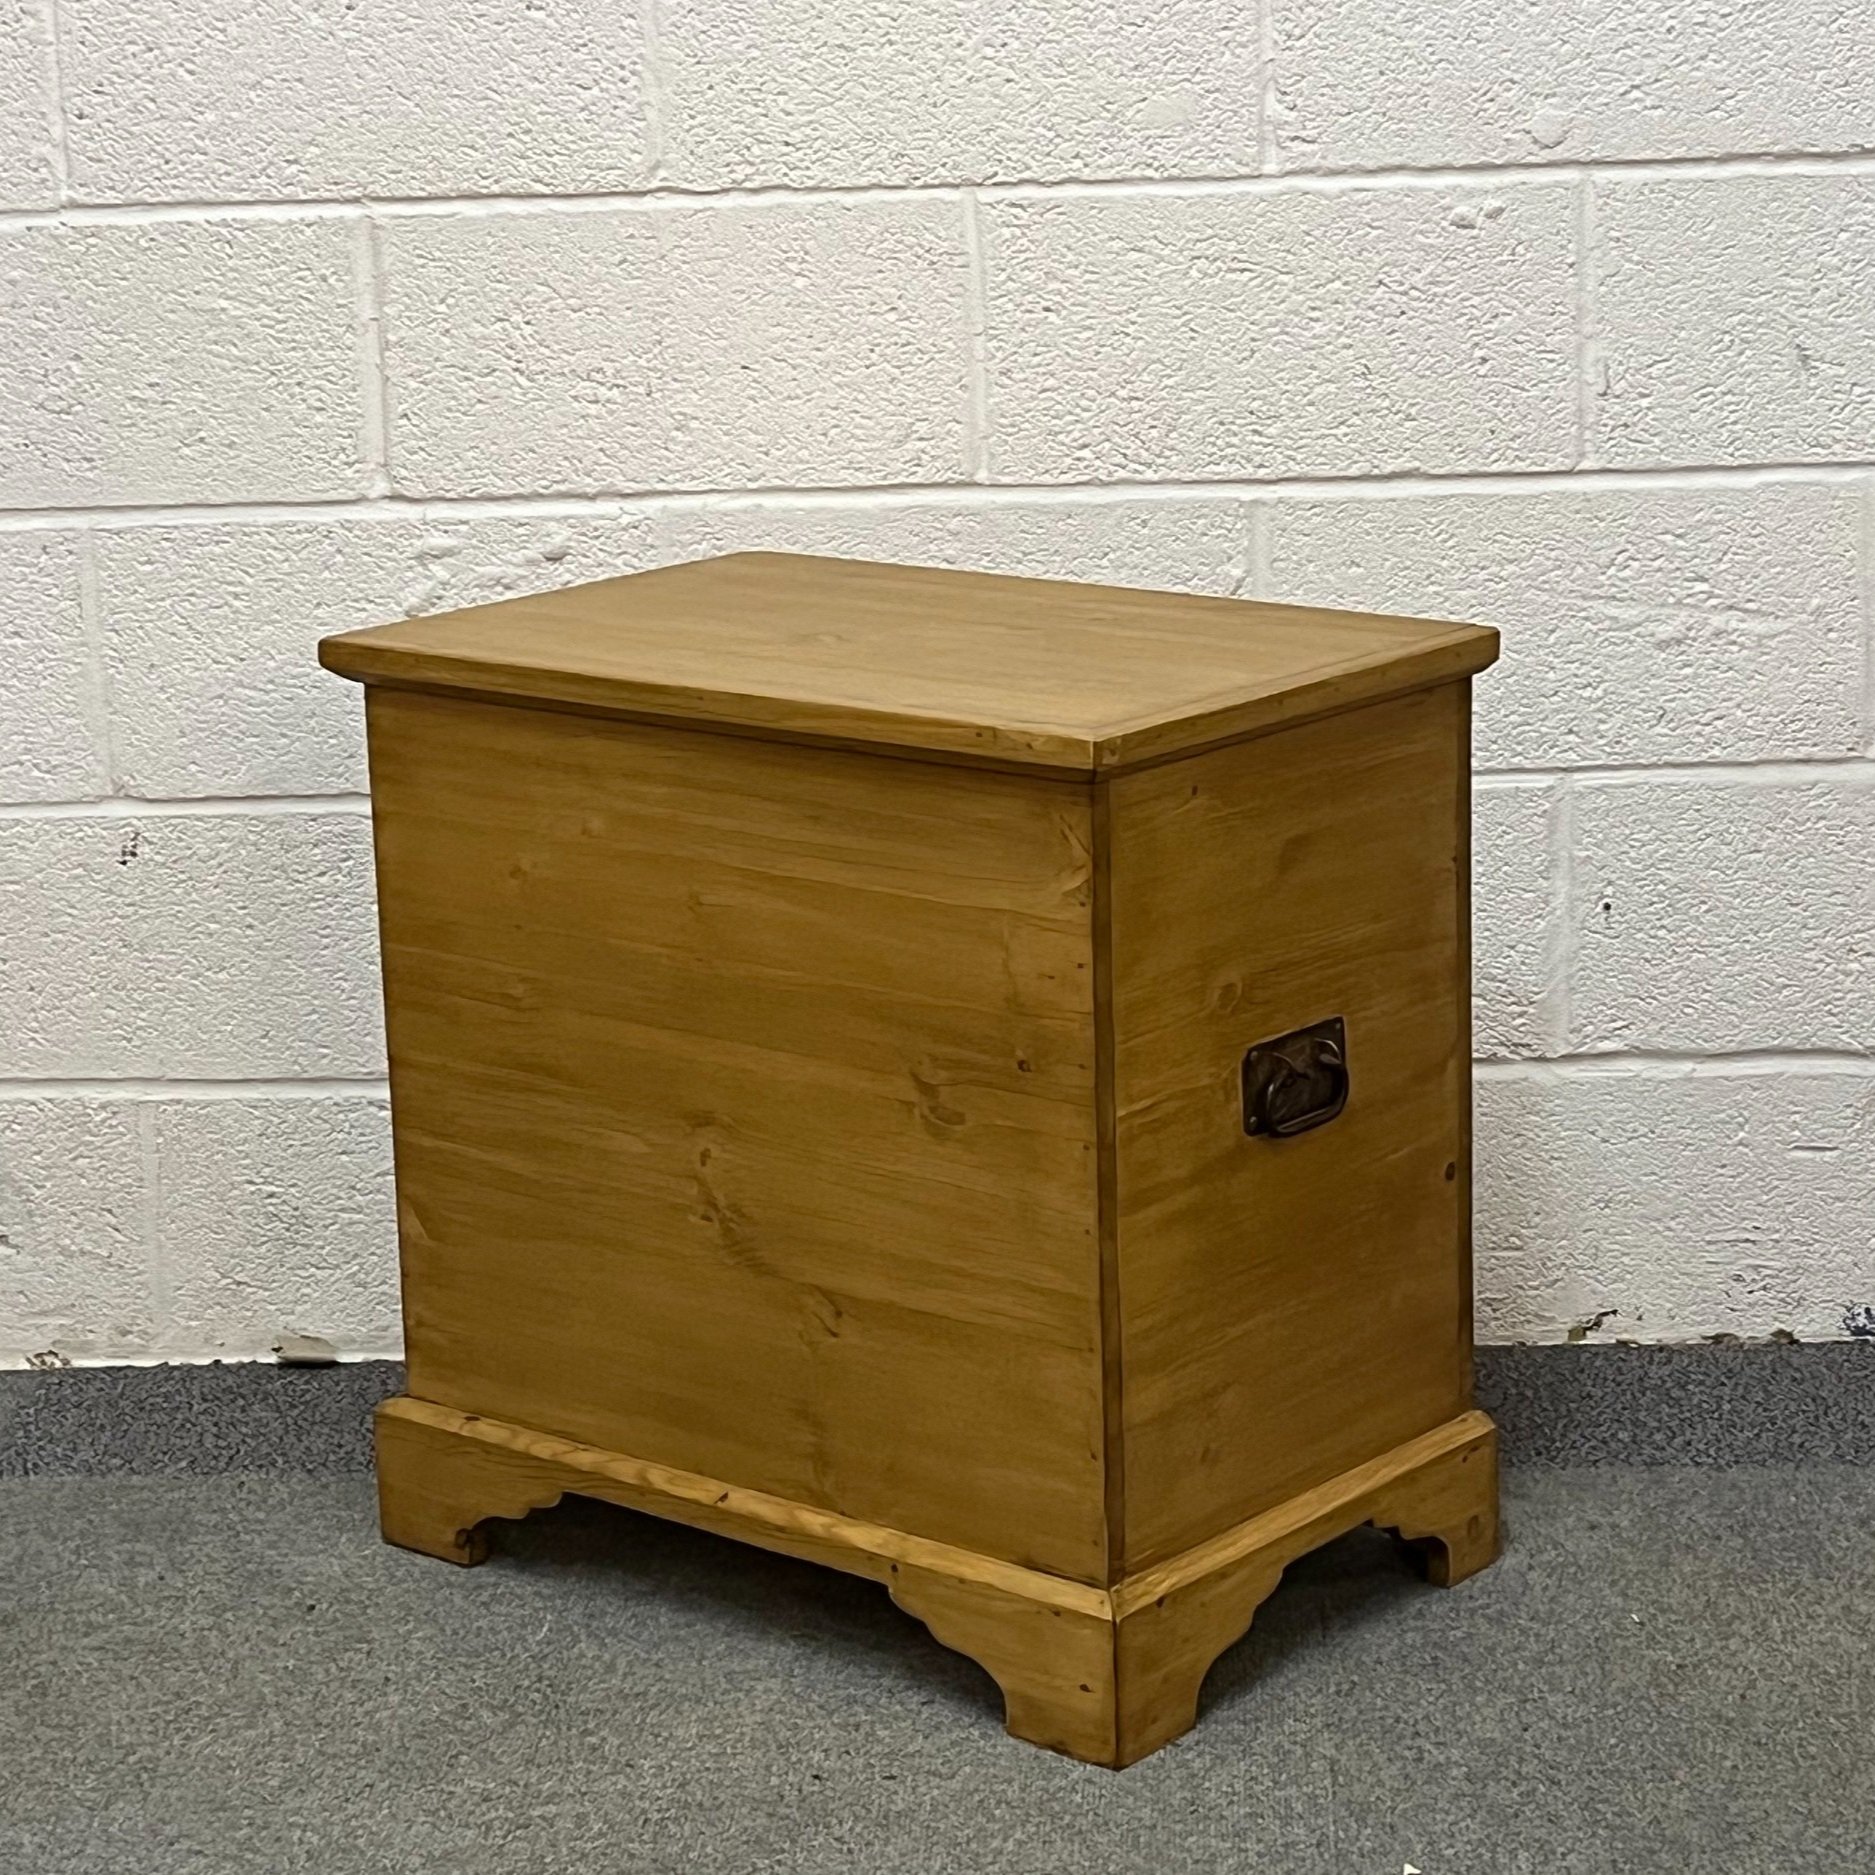 Small handmade pine box